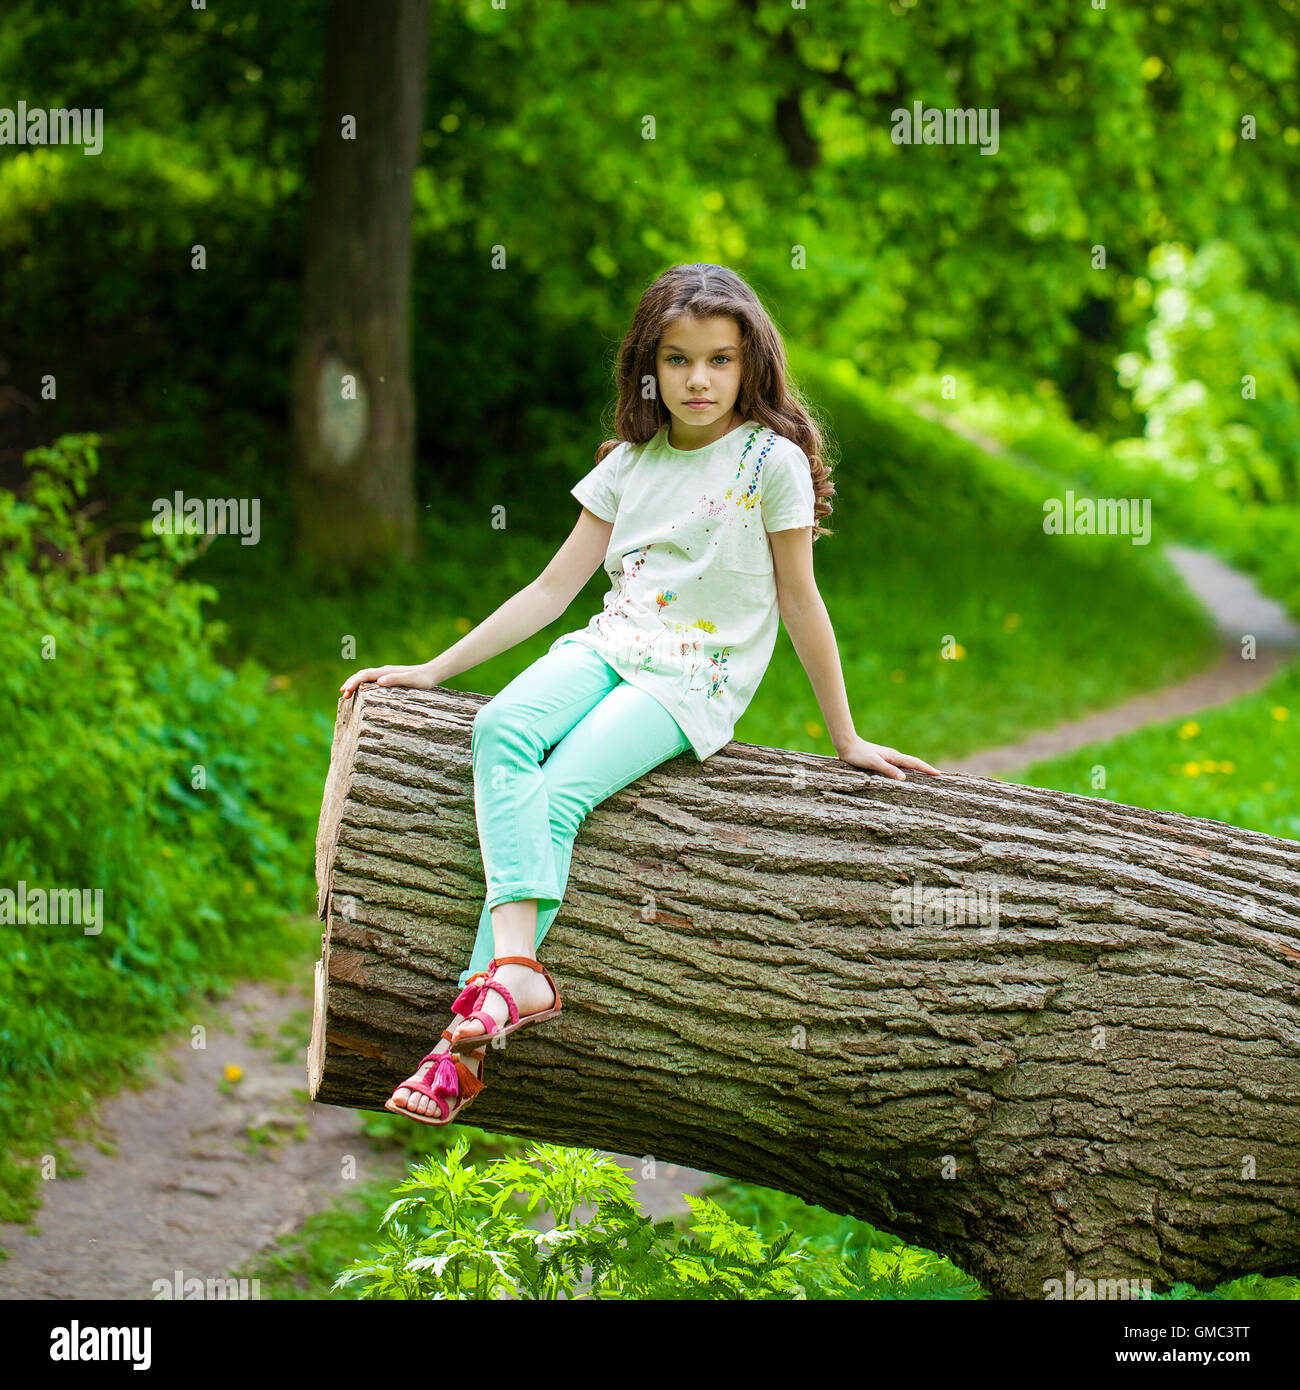 https://c8.alamy.com/comp/GMC3TT/little-girl-in-white-dress-sitting-on-tree-trunk-on-the-background-GMC3TT.jpg